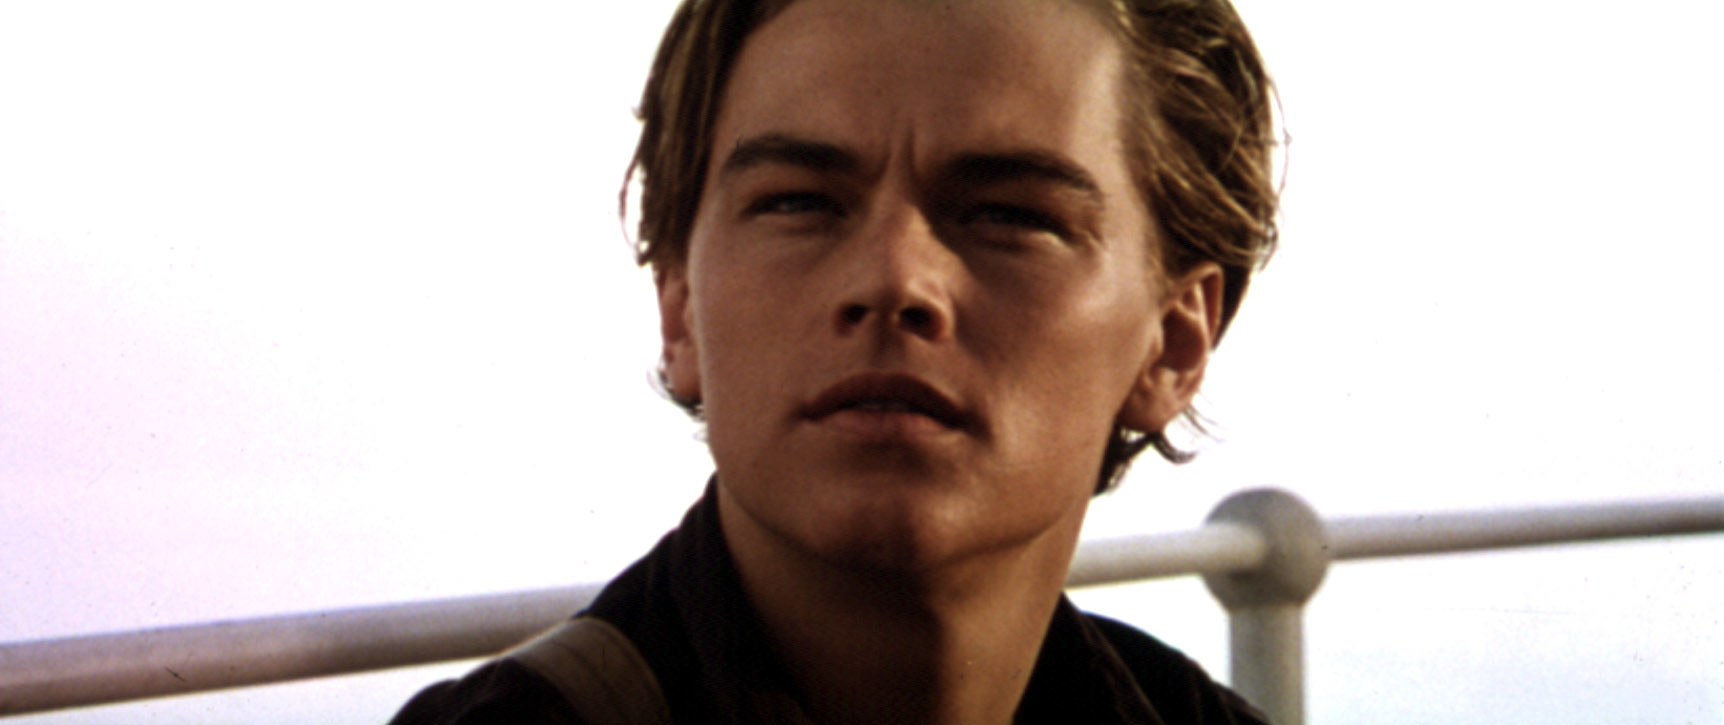 Leo DiCaprio as Jack